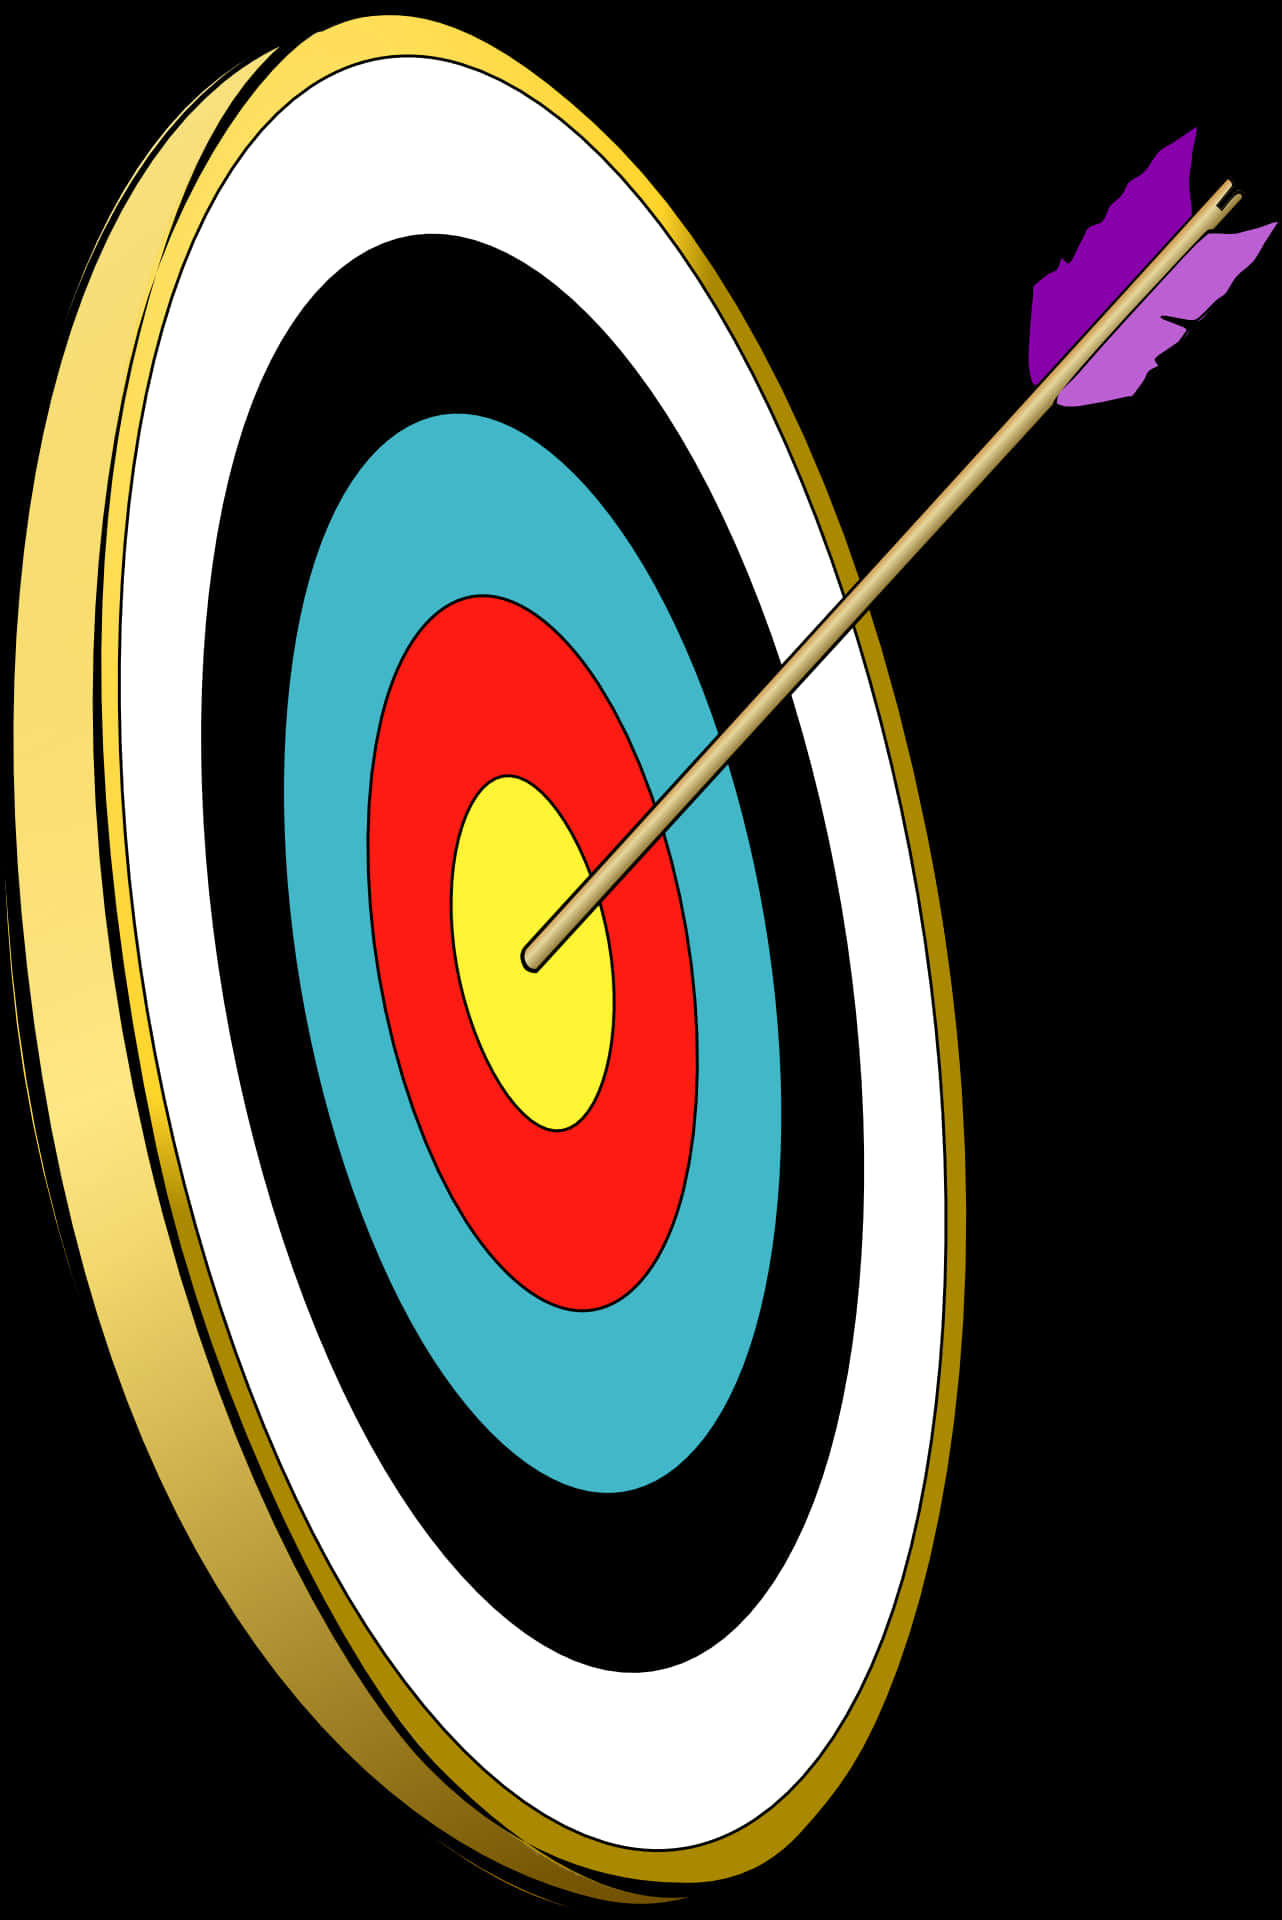 Bullseye Arrow Hit Target